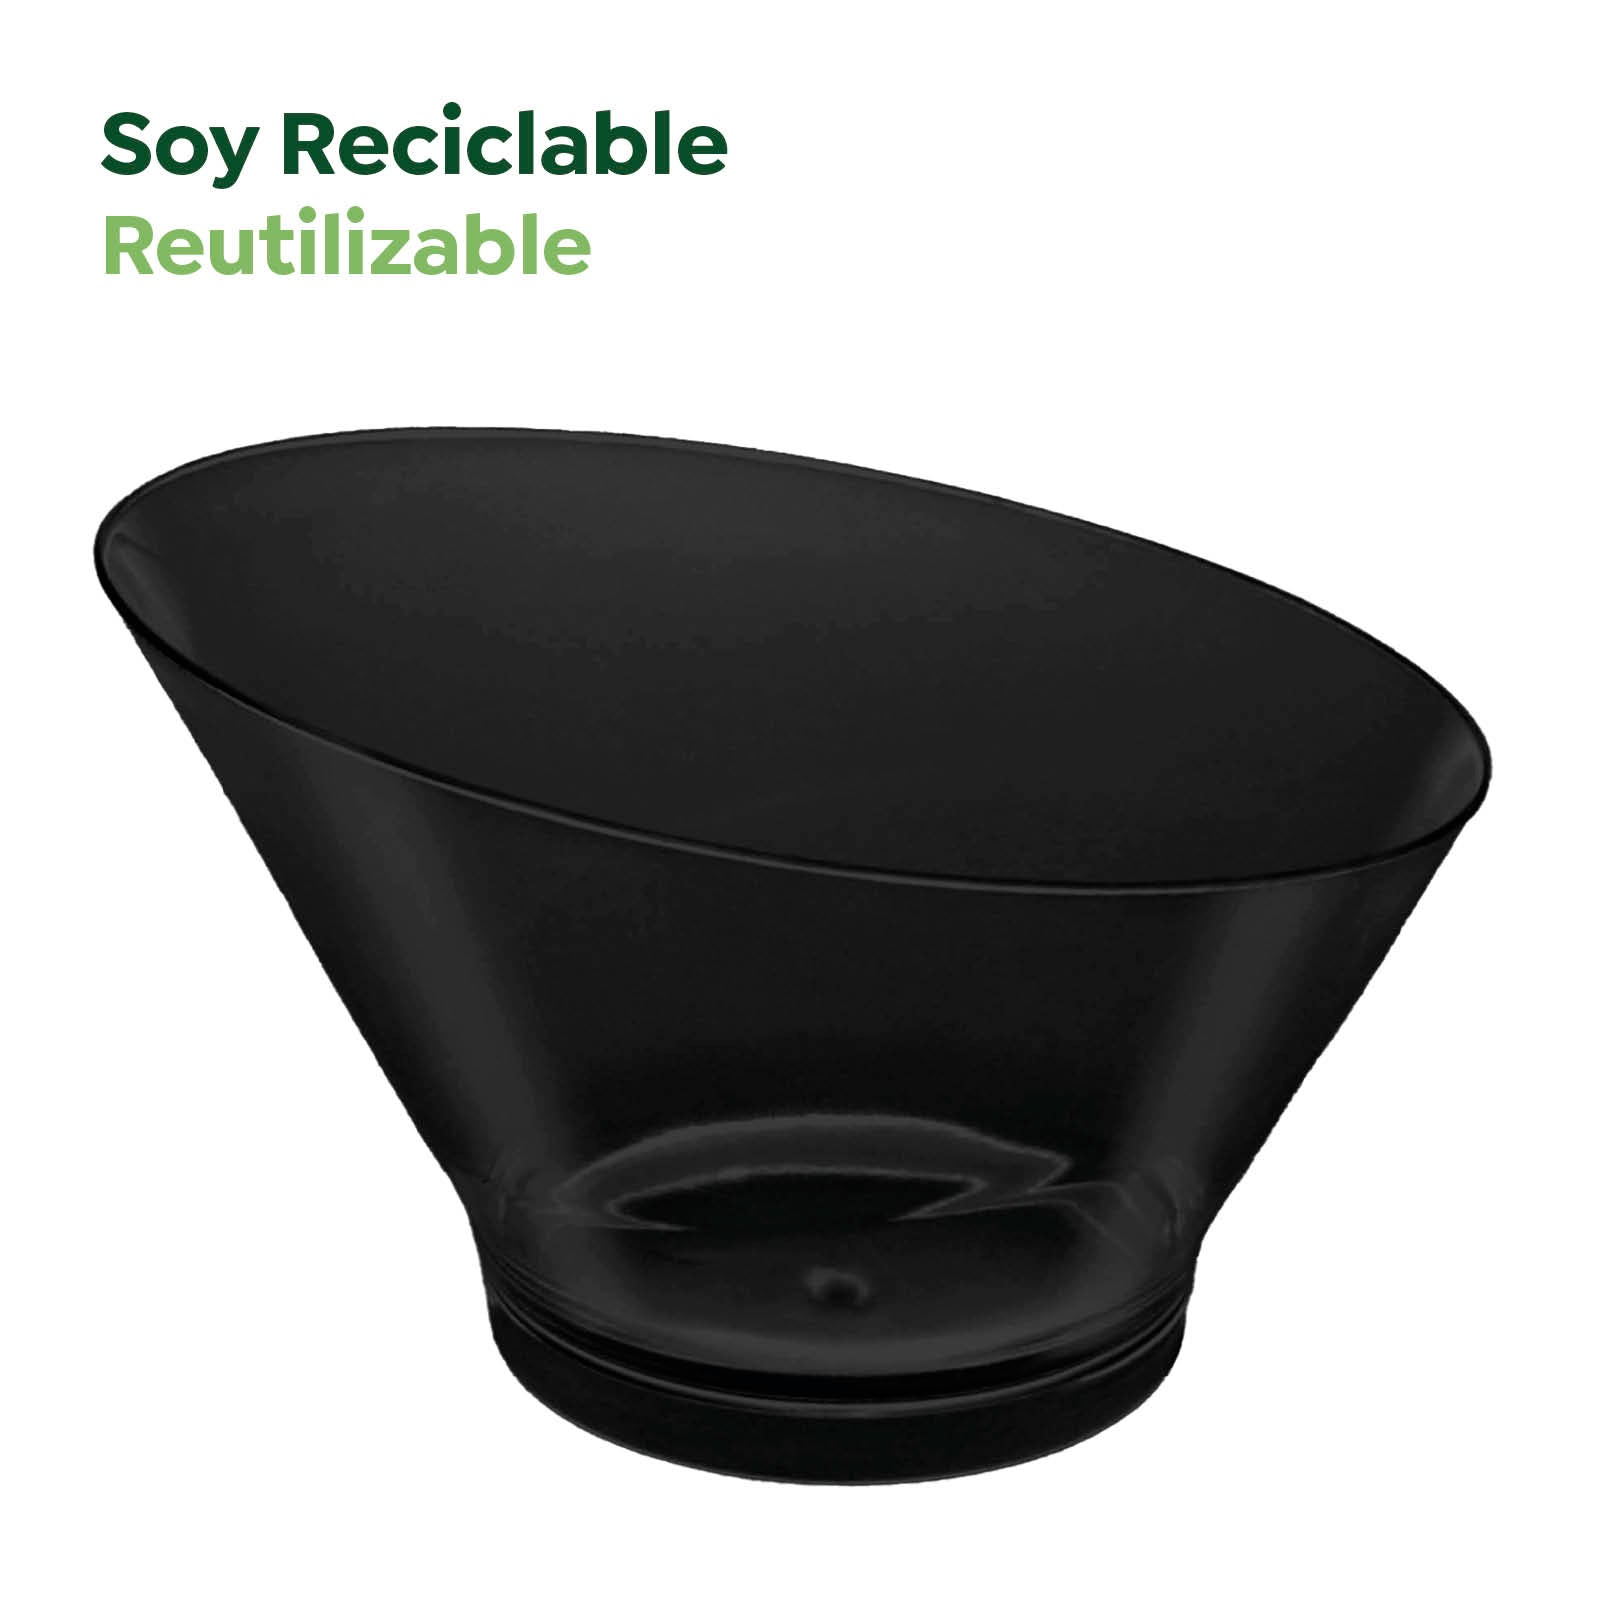 Bol Plástico Reciclable Redondo Grande Asimétrico Finger Food 250 cc Negro